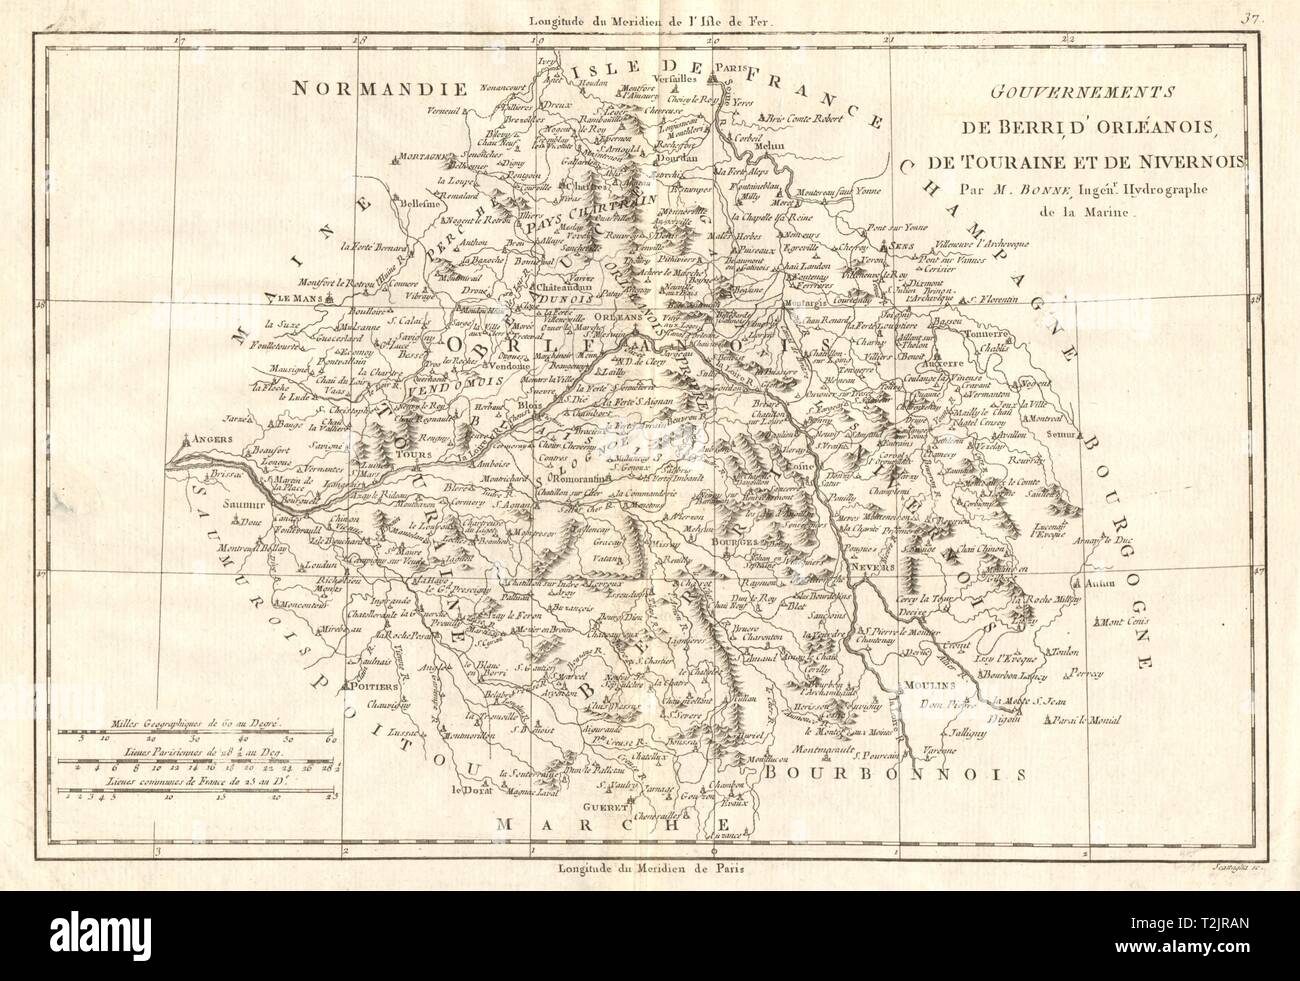 Gouvernements de Berri, d'Orléanois, de Touraine et de Nivernois. BONNE CARTE 1789 Banque D'Images